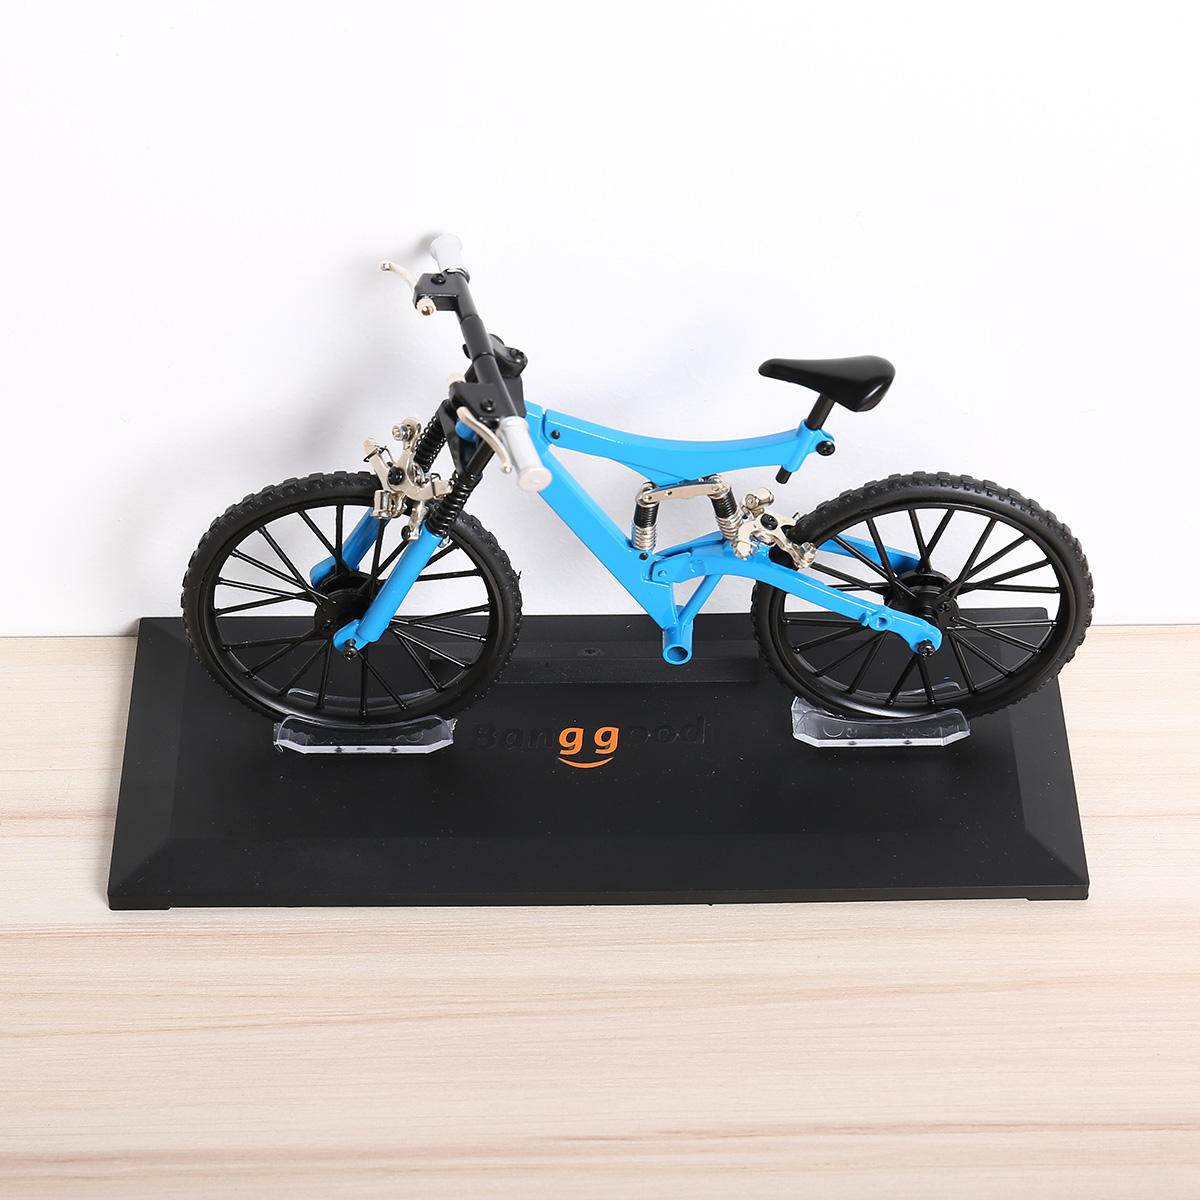 Banggood دراجة نموذج محاكاة DIY أشابة جبل / الطريق دراجة مجموعة الديكور هدية نموذج اللعب